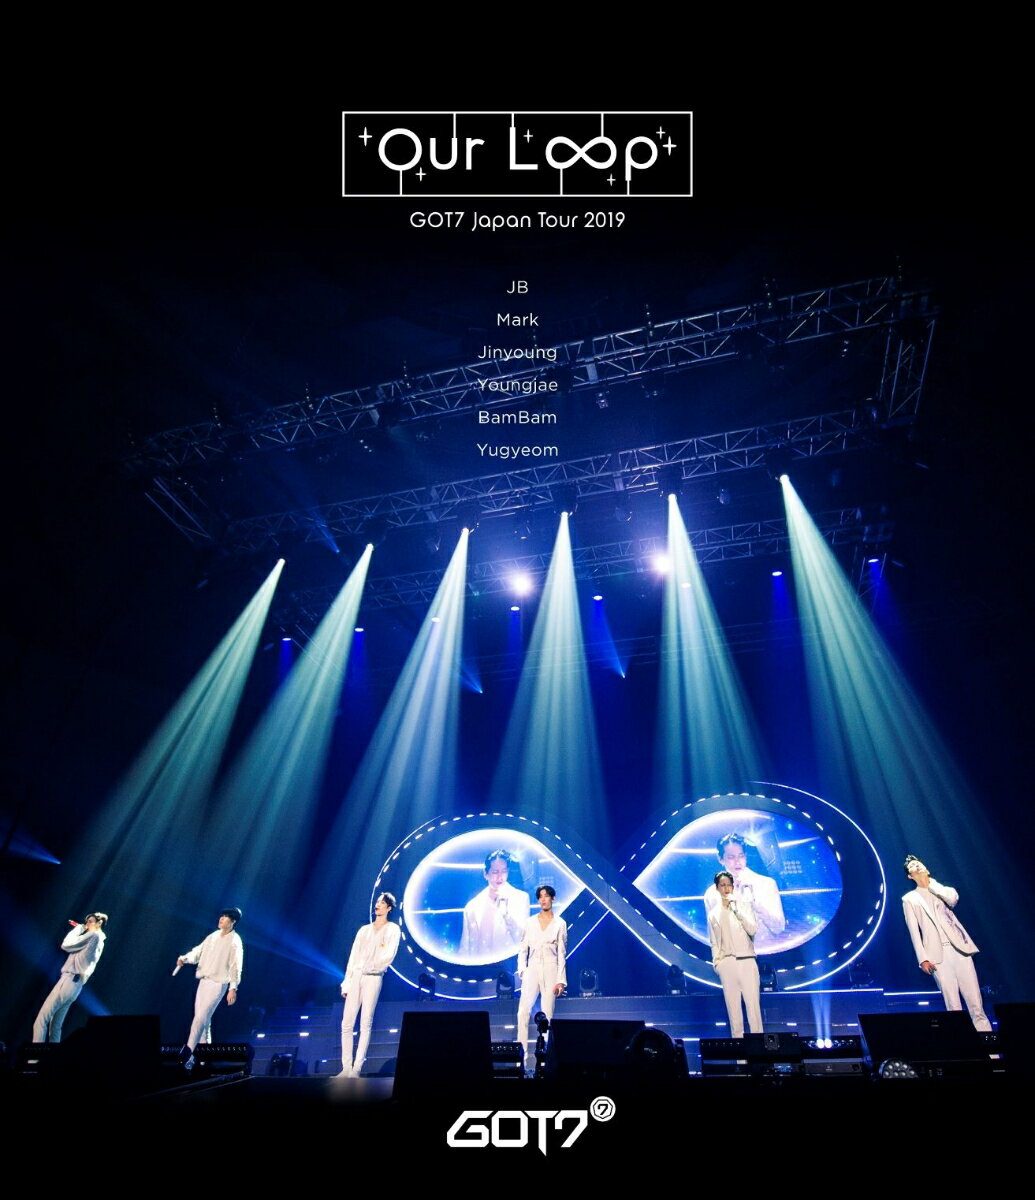 GOT7 Japan Tour 2019 ”Our Loop”